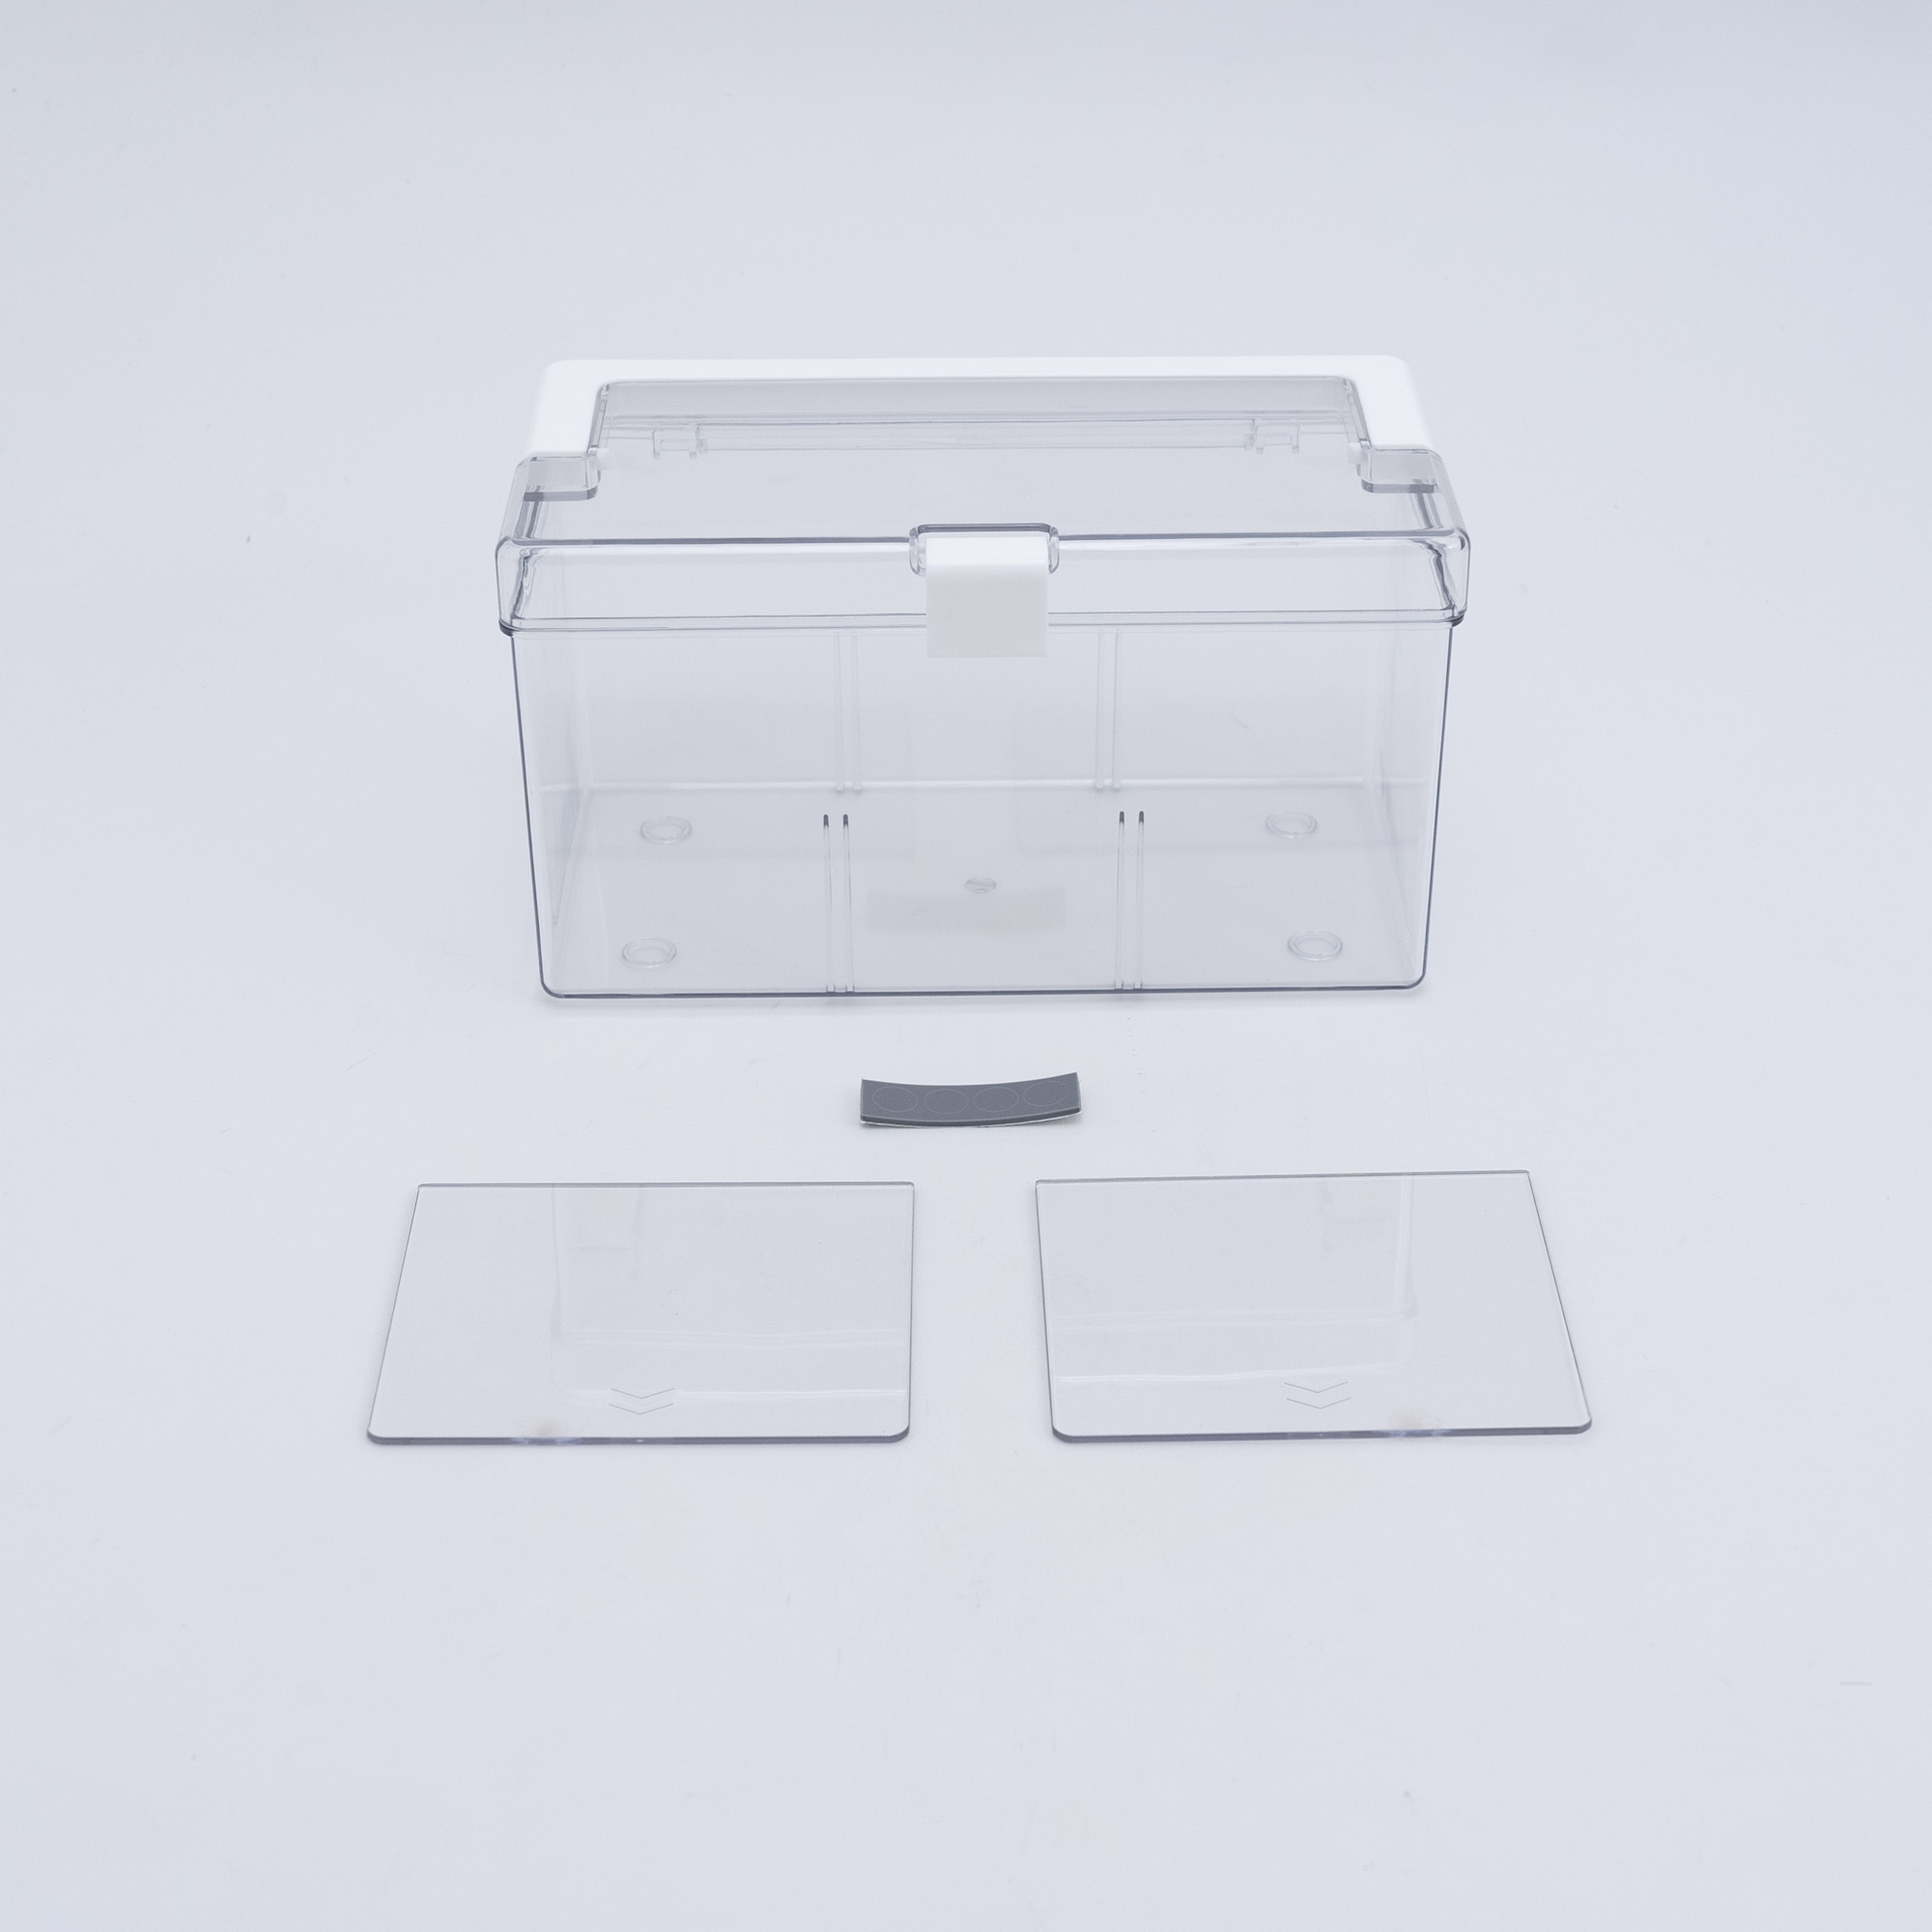 透明ピルボックス|大きすぎない小容量のピルボックス!高透明な素材で視界を邪魔しない！|undefined